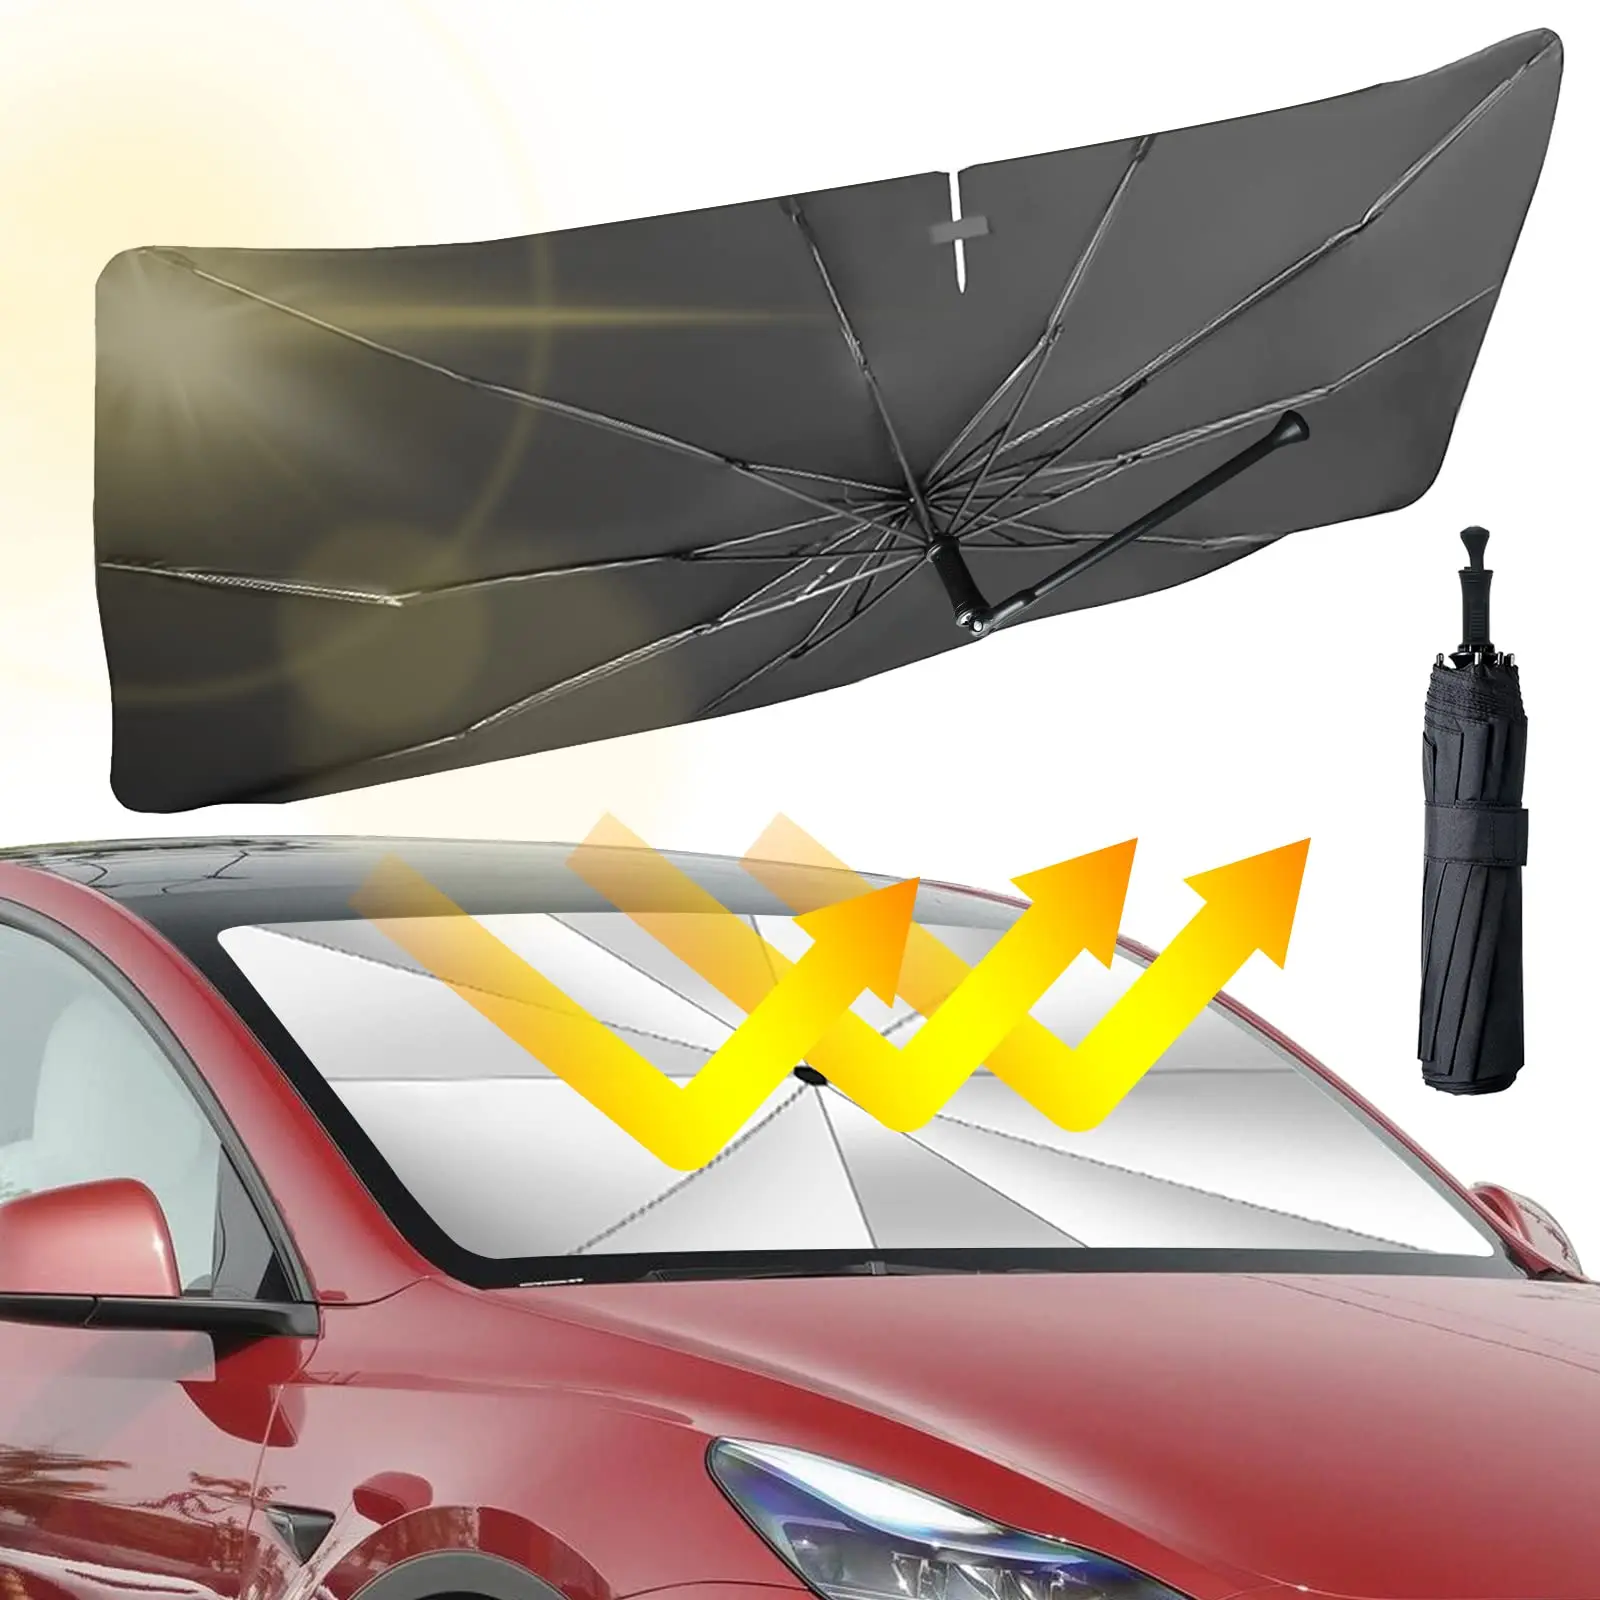 Солнцезащитный козырек на лобовом стекле автомобиля, зонт, крышка солнцезащитного козырька, блокирующая ультрафиолетовые лучи, защита солнцезащитного козырька, складной отражатель, ветровые стекла, зонт